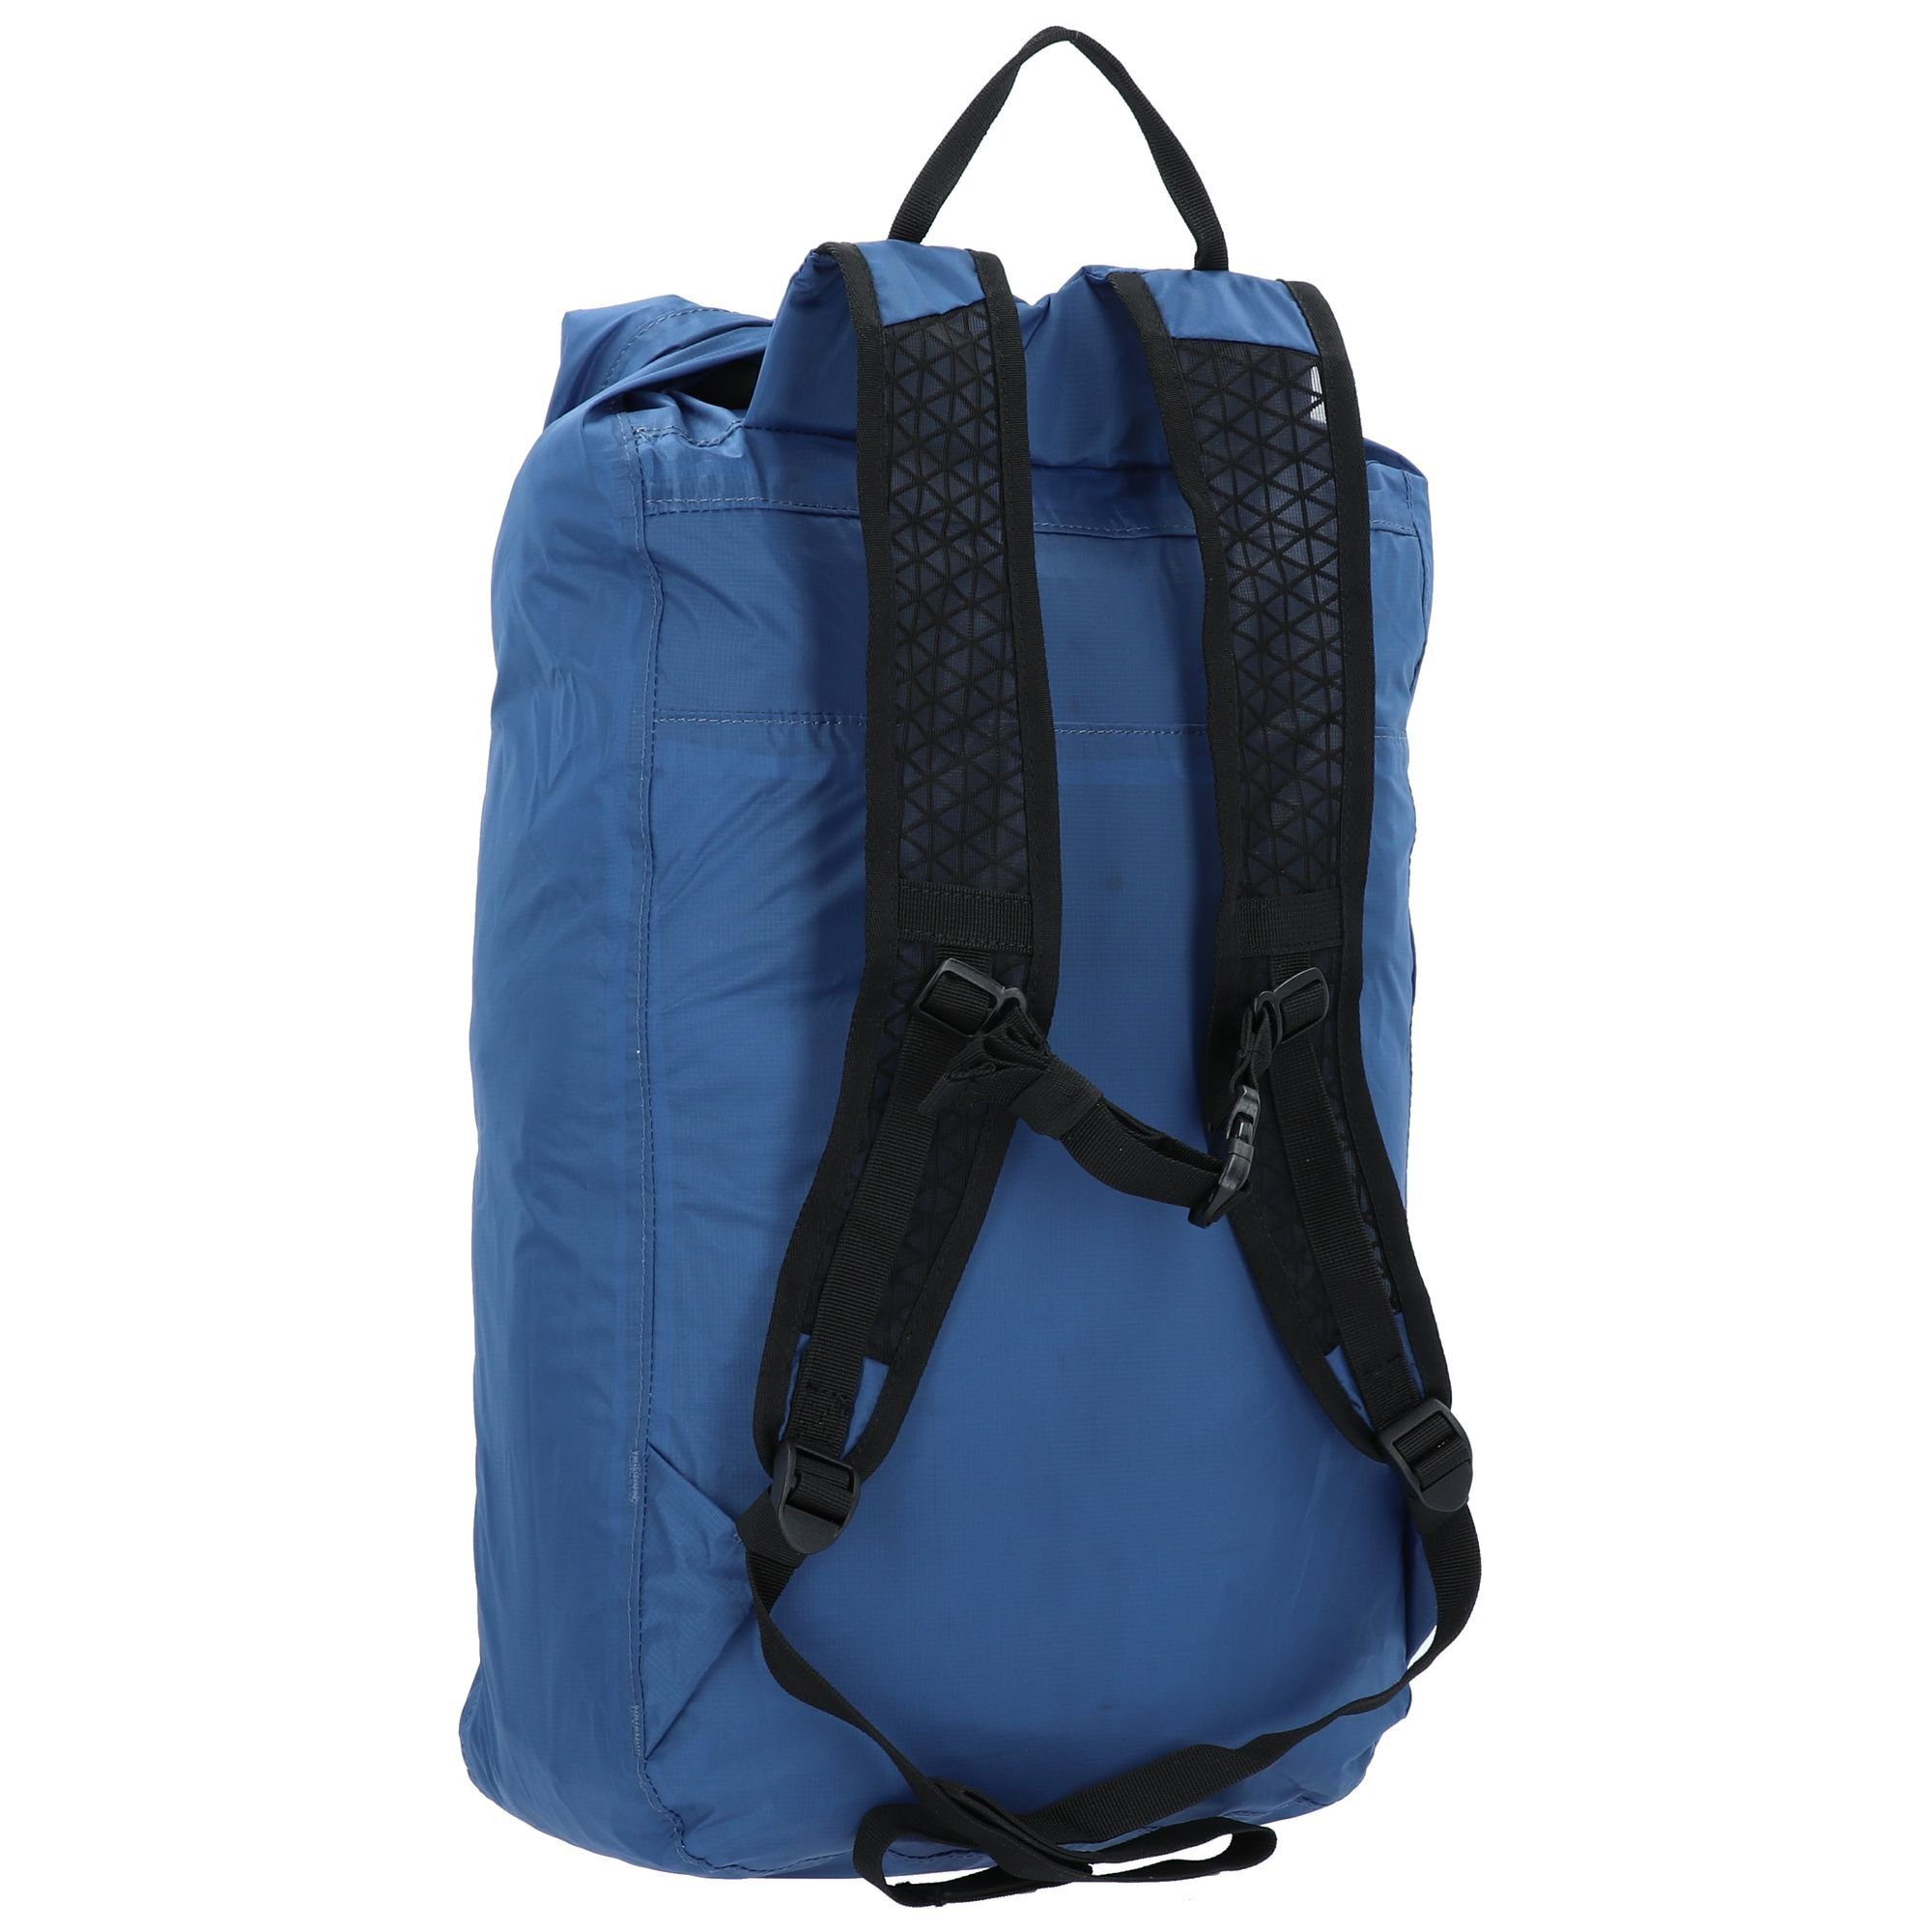 Bags, Cabinzero Nylon Rucksack Companion blue atlantic